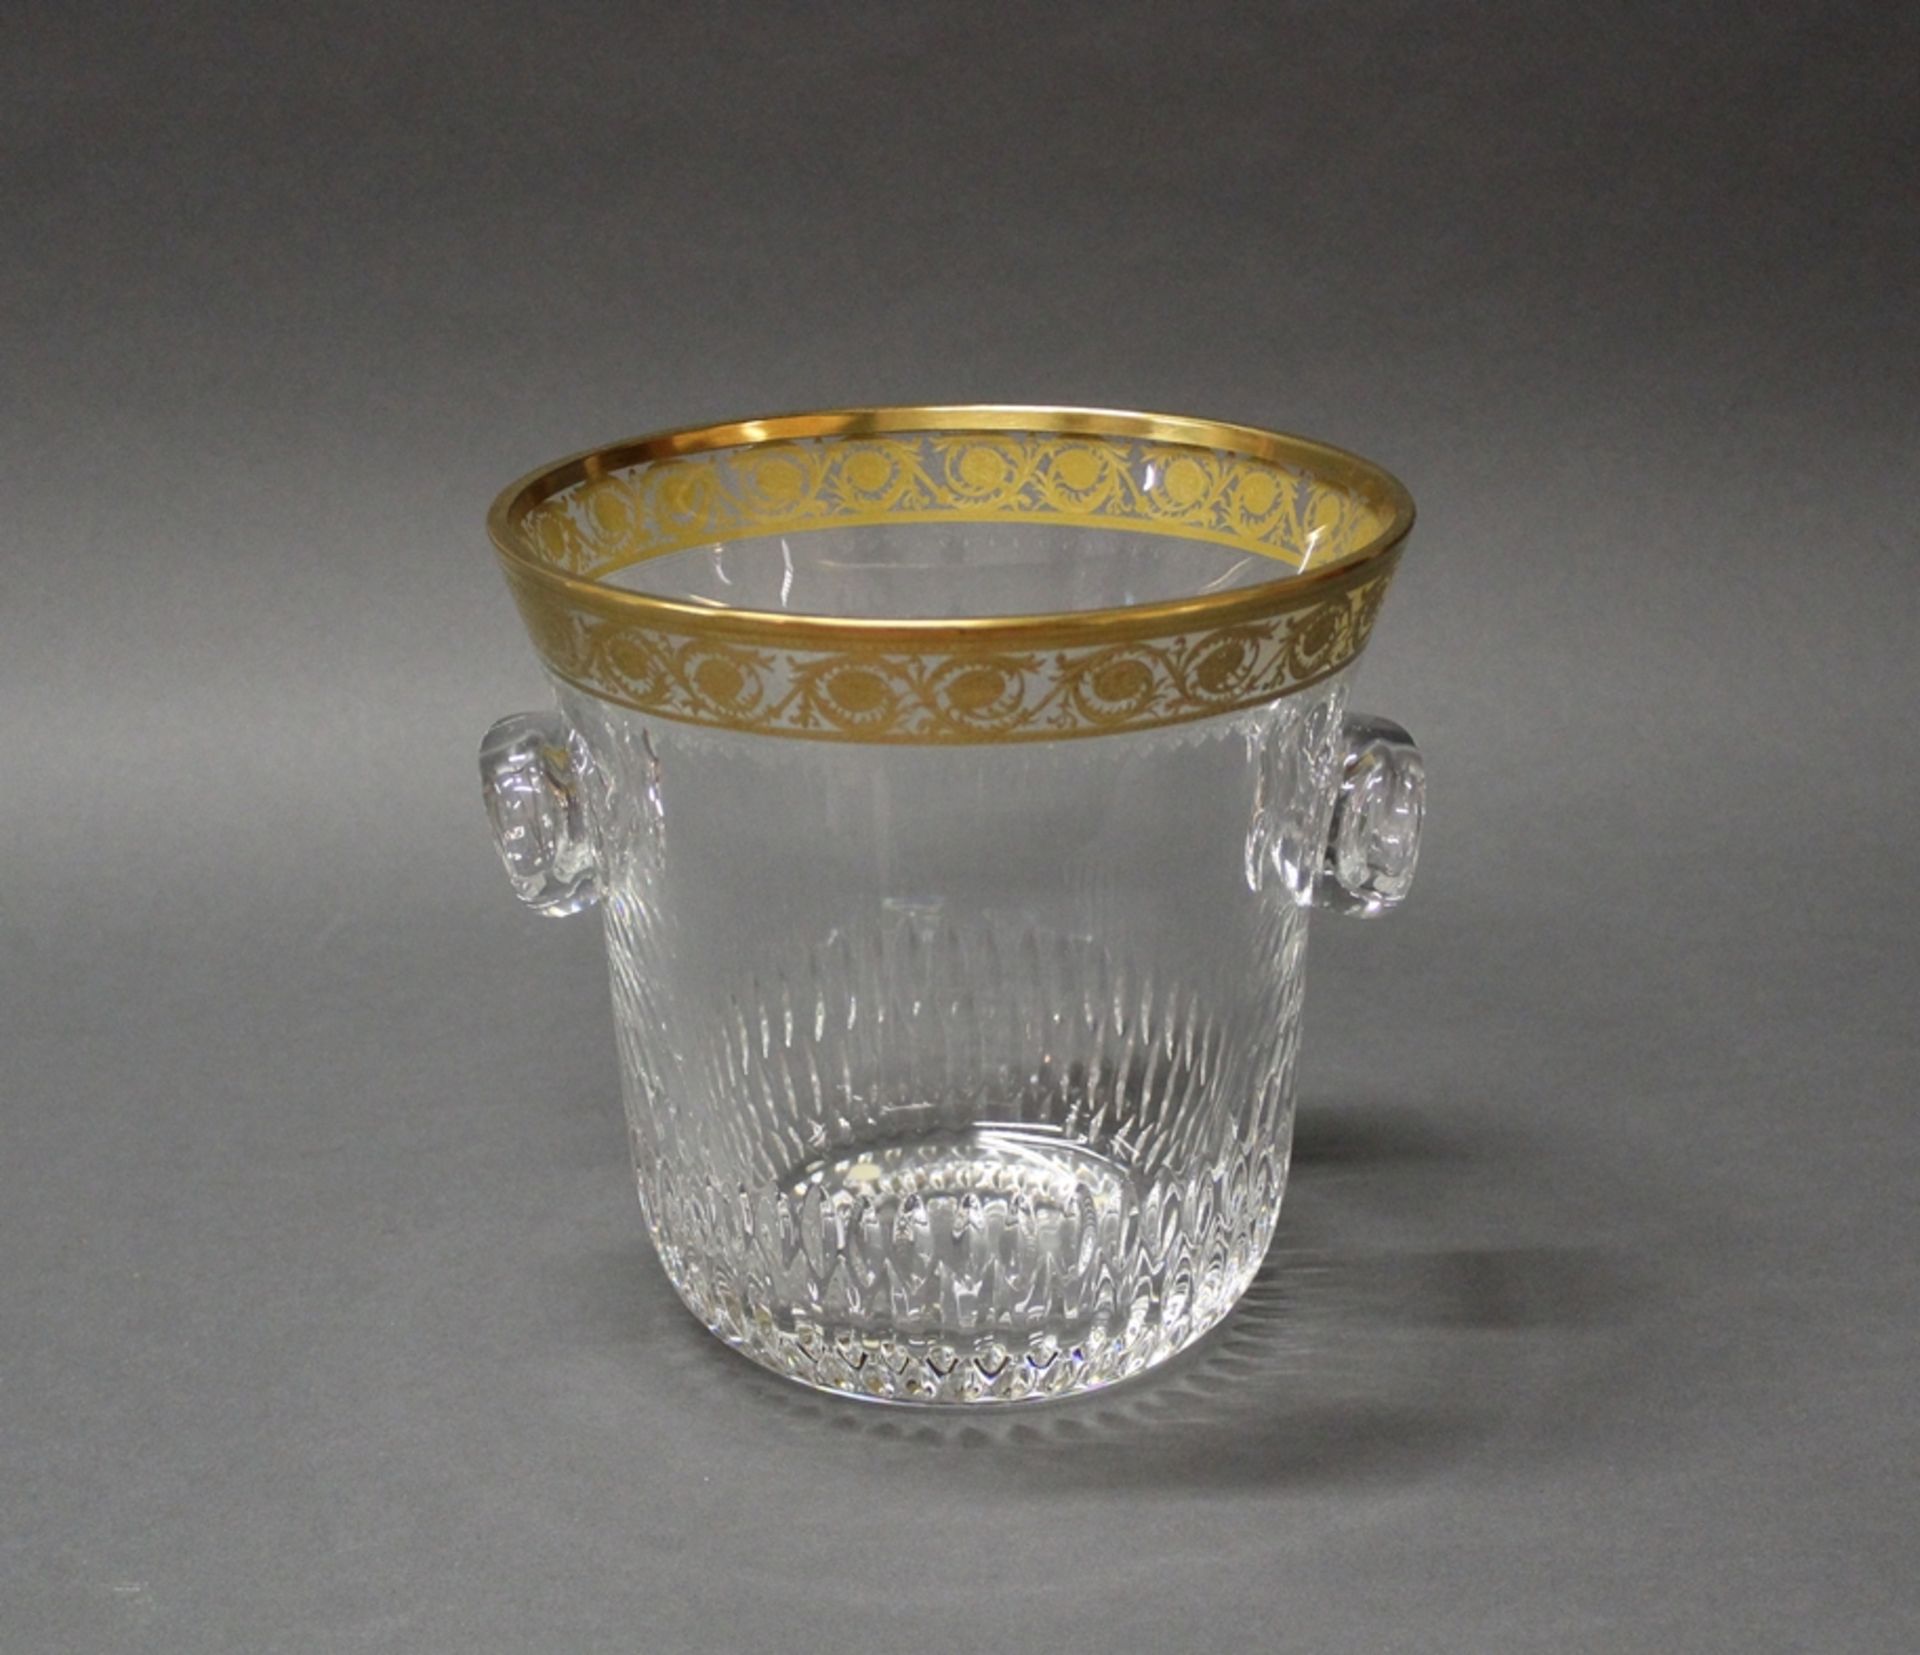 Champagnerkühler, "Thistle", Cristallerie Saint Louis, 2. Hälfte 20. Jh., Dekor Thistle Gold, farbl